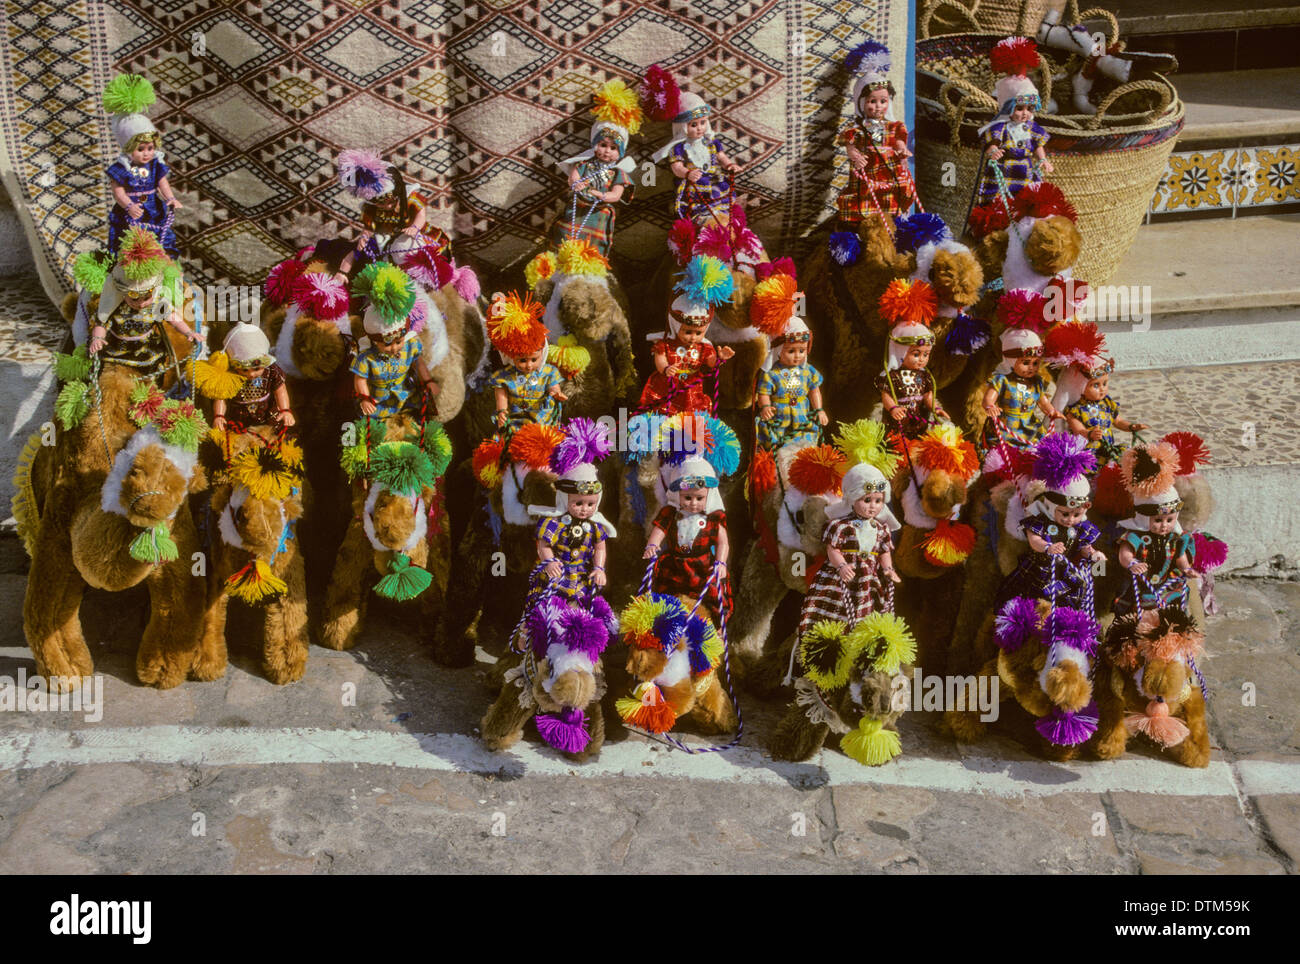 Tunisia, Sidi Bou Said. Stuffed Camels and Dolls. Stock Photo